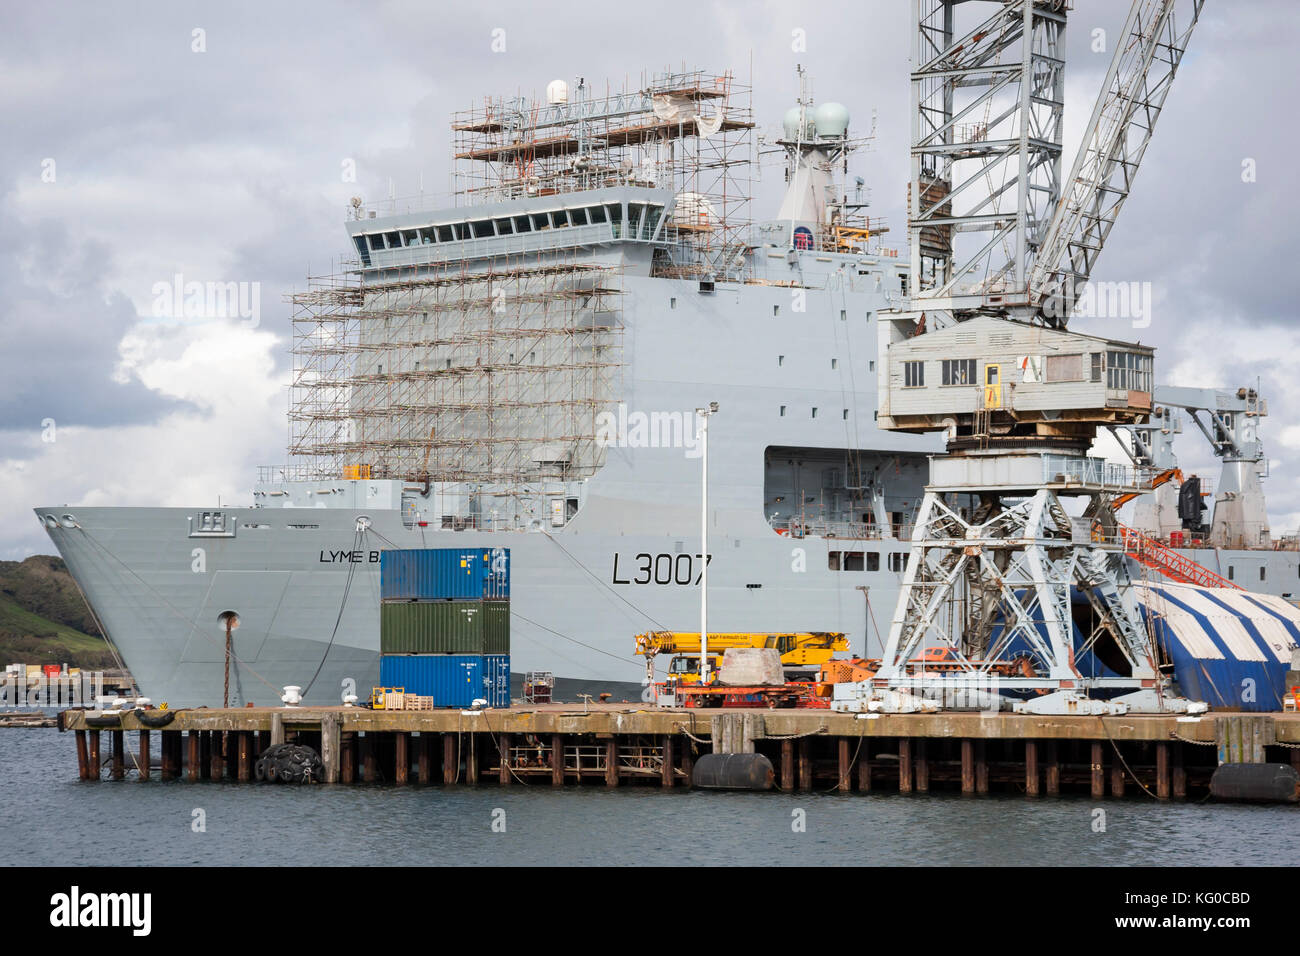 Bateau de la baie de Lyme de demandes en cours de maintenance dans la région de Falmouth docks, UK Banque D'Images